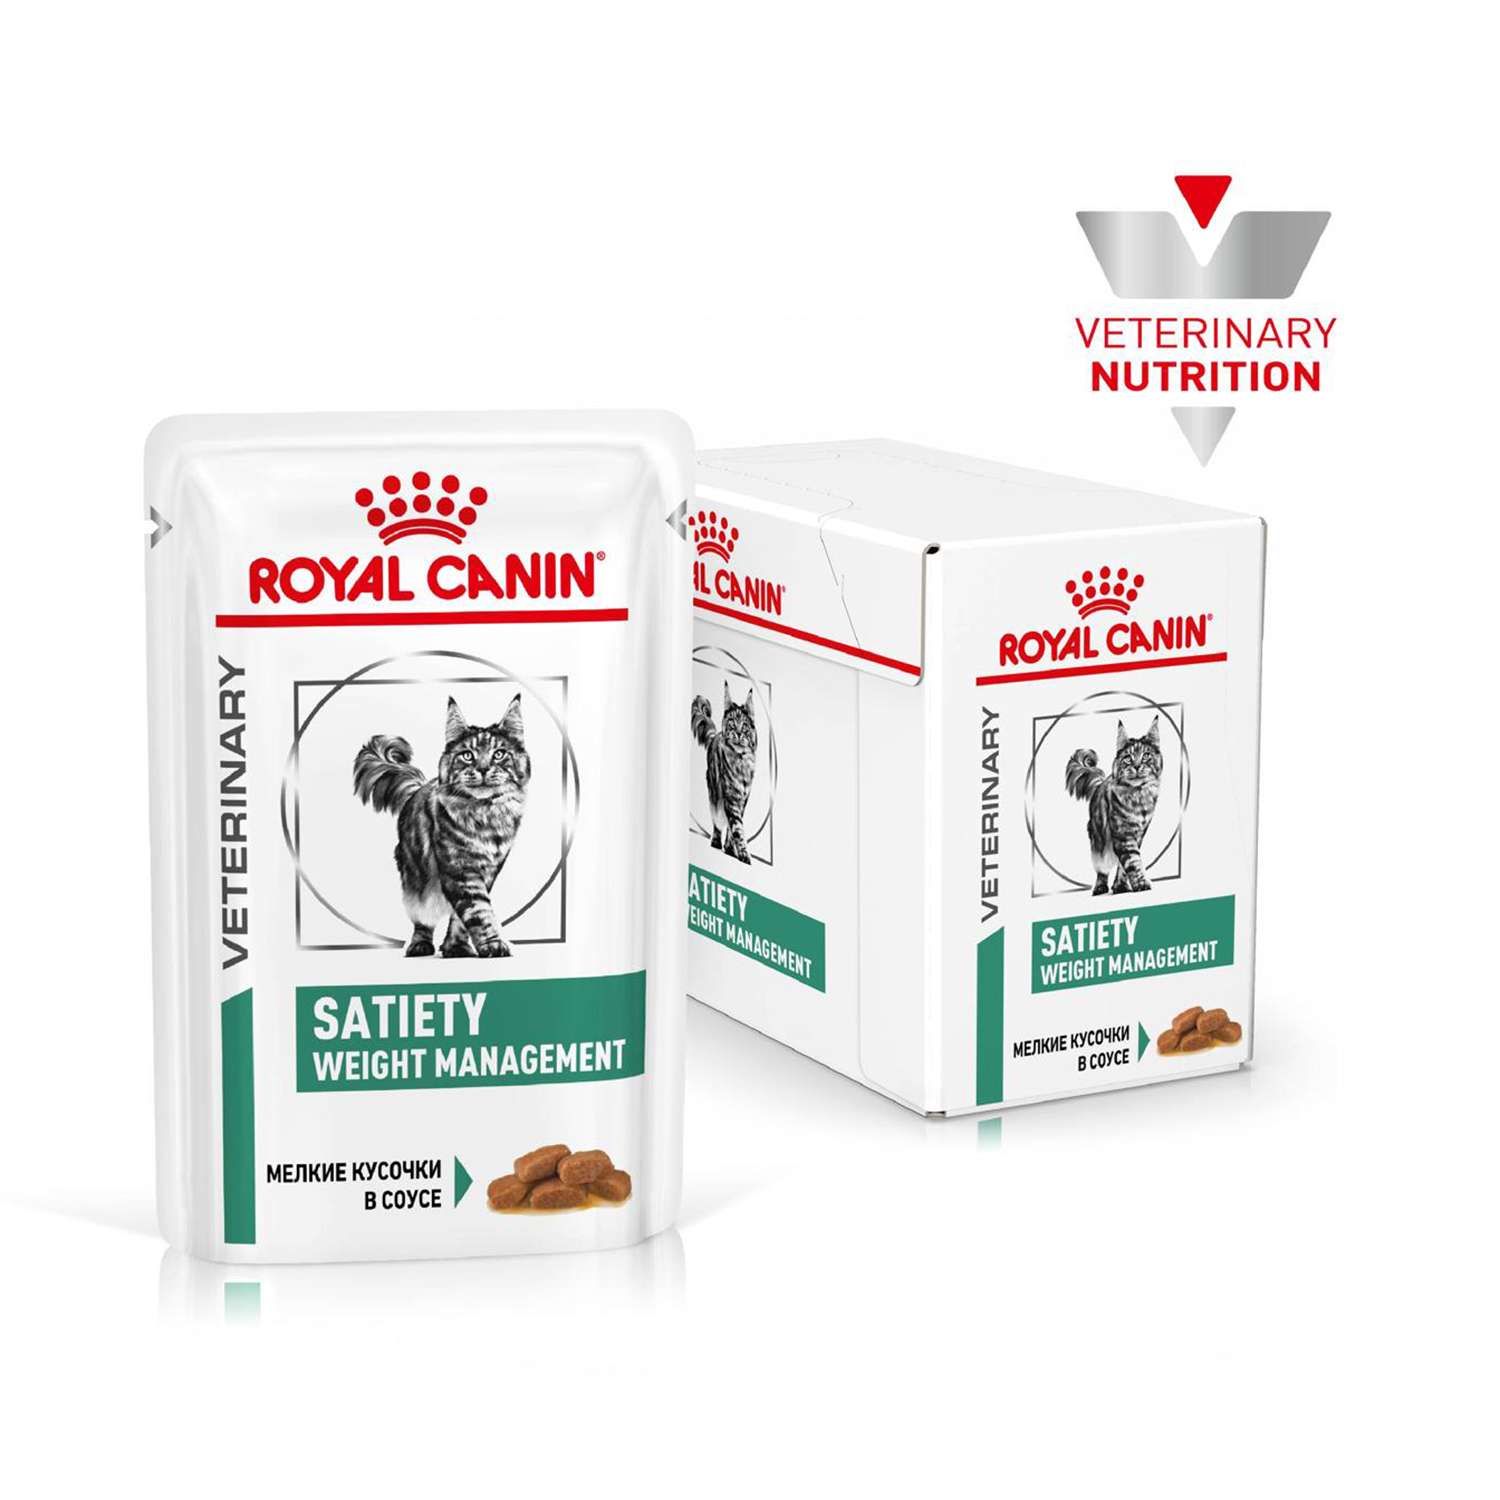 Корм влажный для кошек ROYAL CANIN Satiety management 30 0.085кг онтроль веса консервированный - фото 2